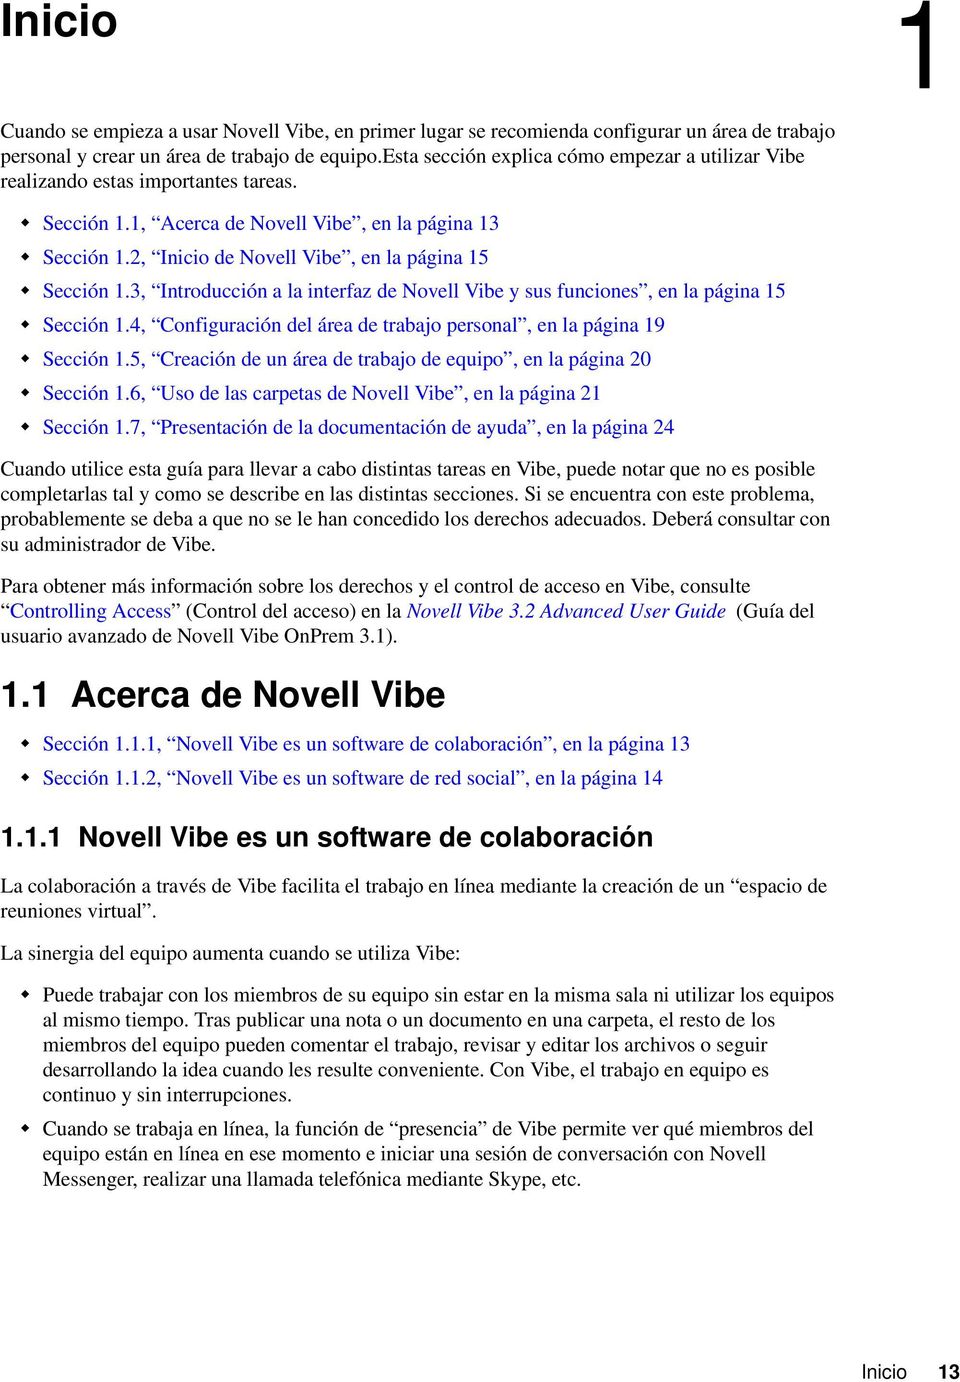 2, Inicio de Novell Vibe, en la página 15 Sección 1.3, Introducción a la interfaz de Novell Vibe y sus funciones, en la página 15 Sección 1.